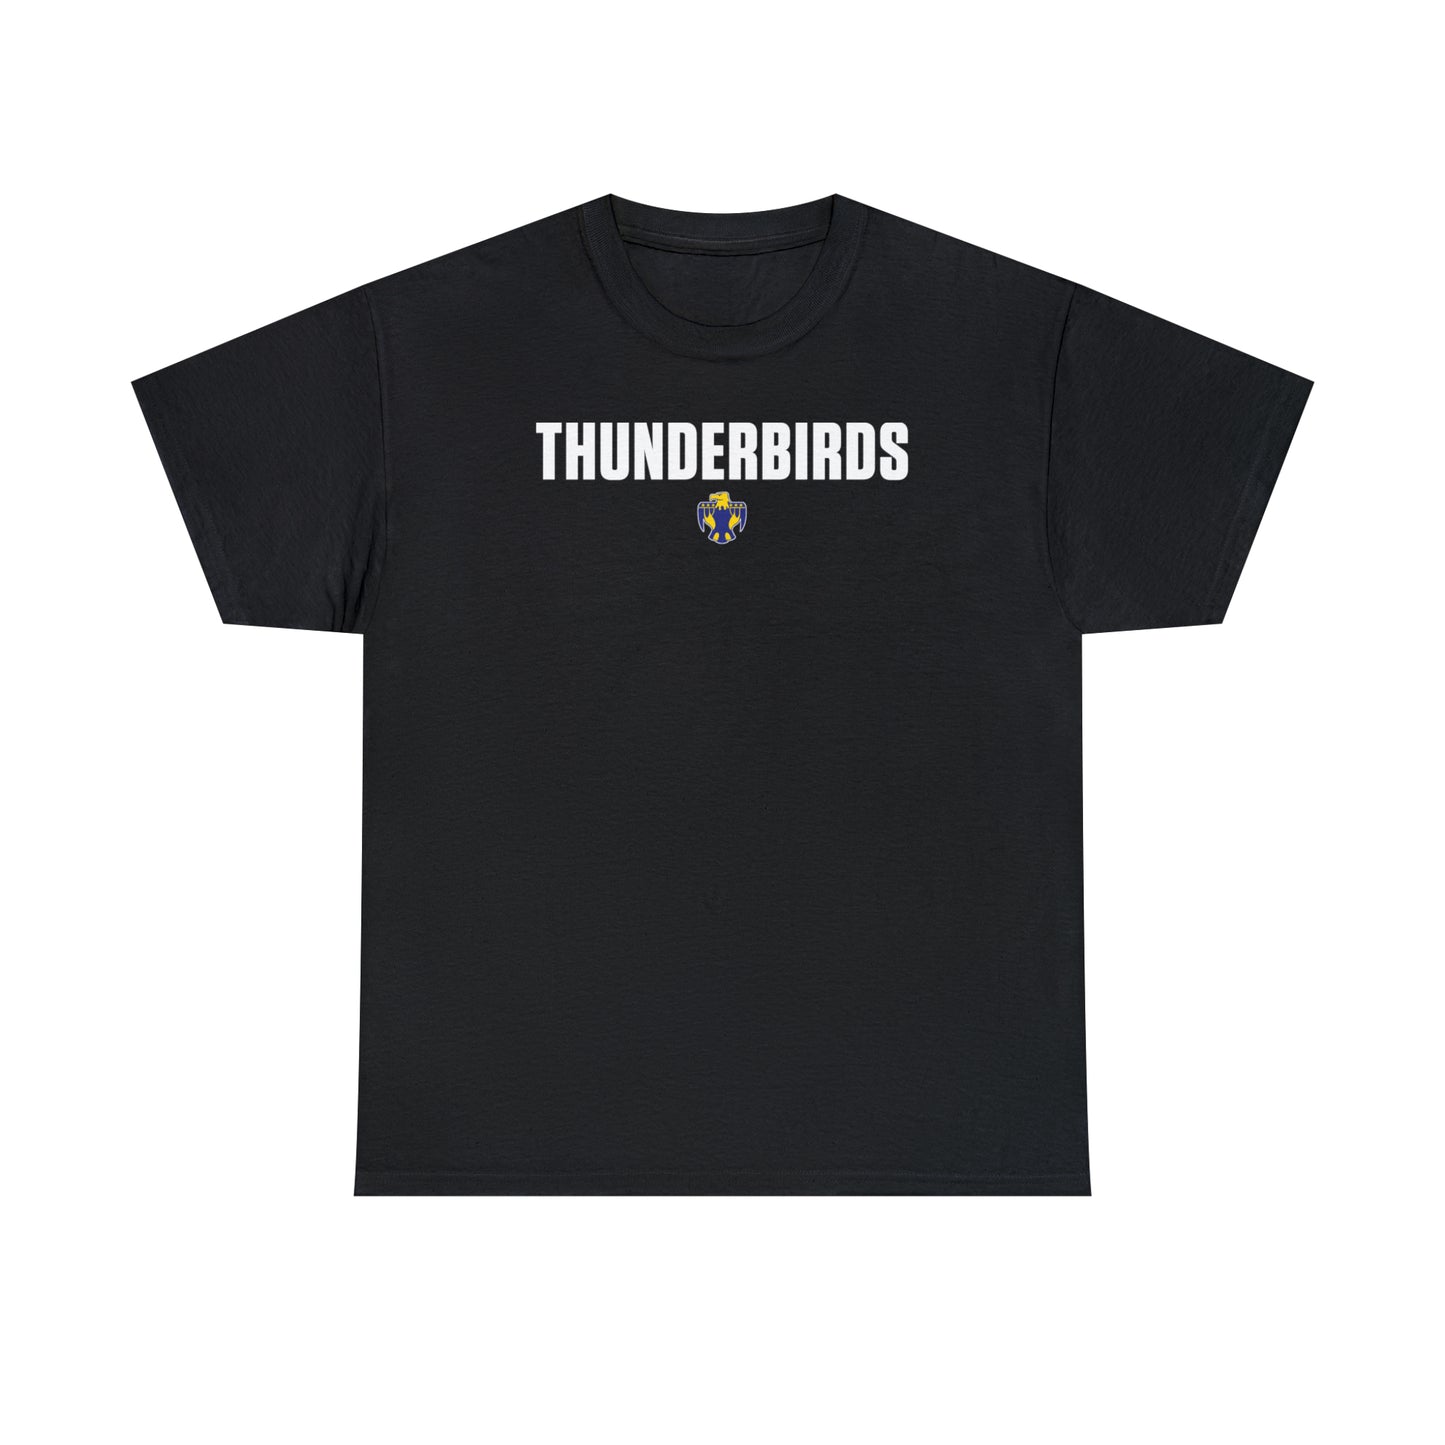 Thunderbird TShirt, Unisex Heavy Cotton Tee